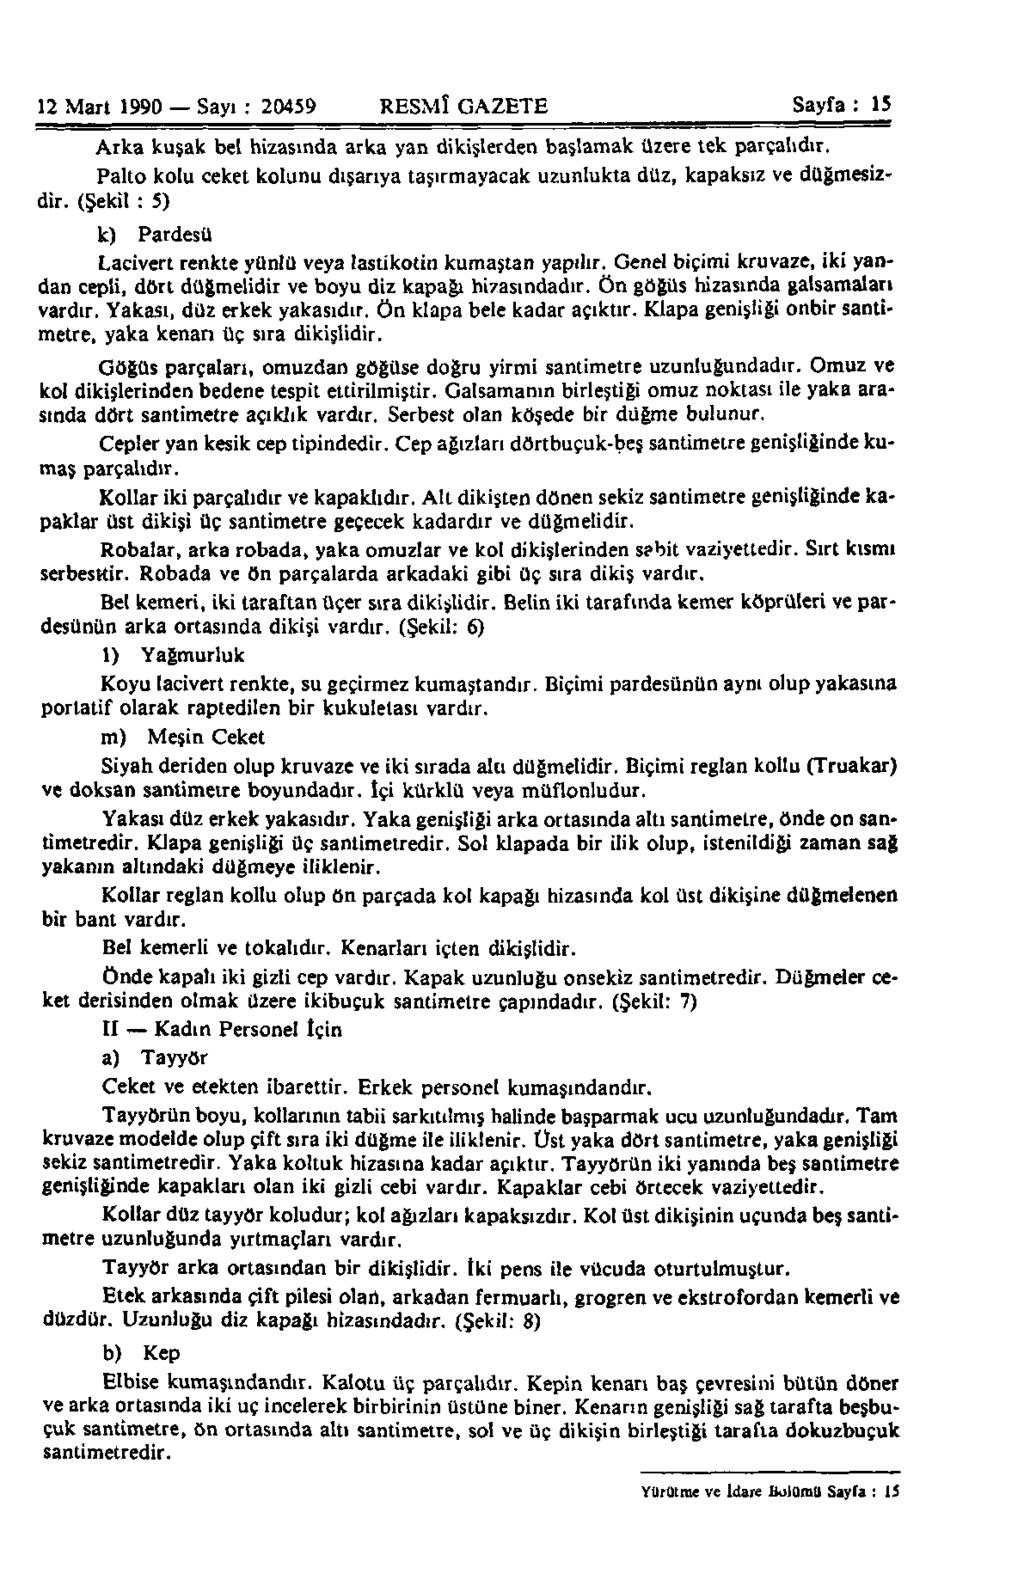 12 Mart 1990 Sayı : 20459 RESMÎ GAZETE Sayfa : 15 Arka kuşak bel hizasında arka yan dikişlerden başlamak üzere tek parçalıdır.